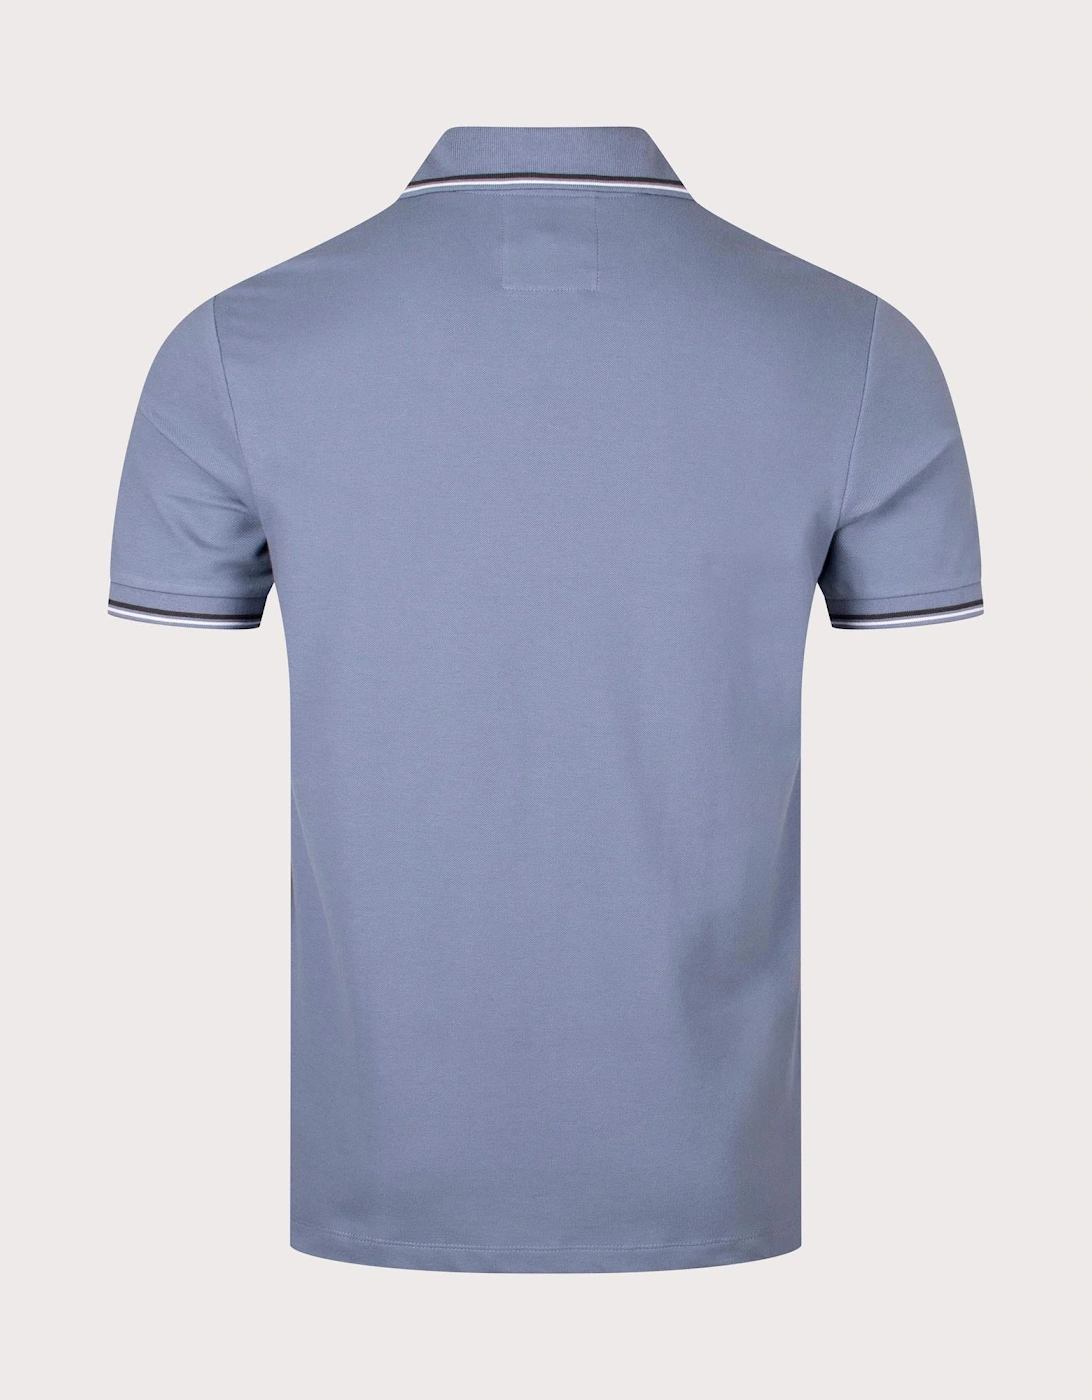 Essential Stretch Pique Polo Shirt